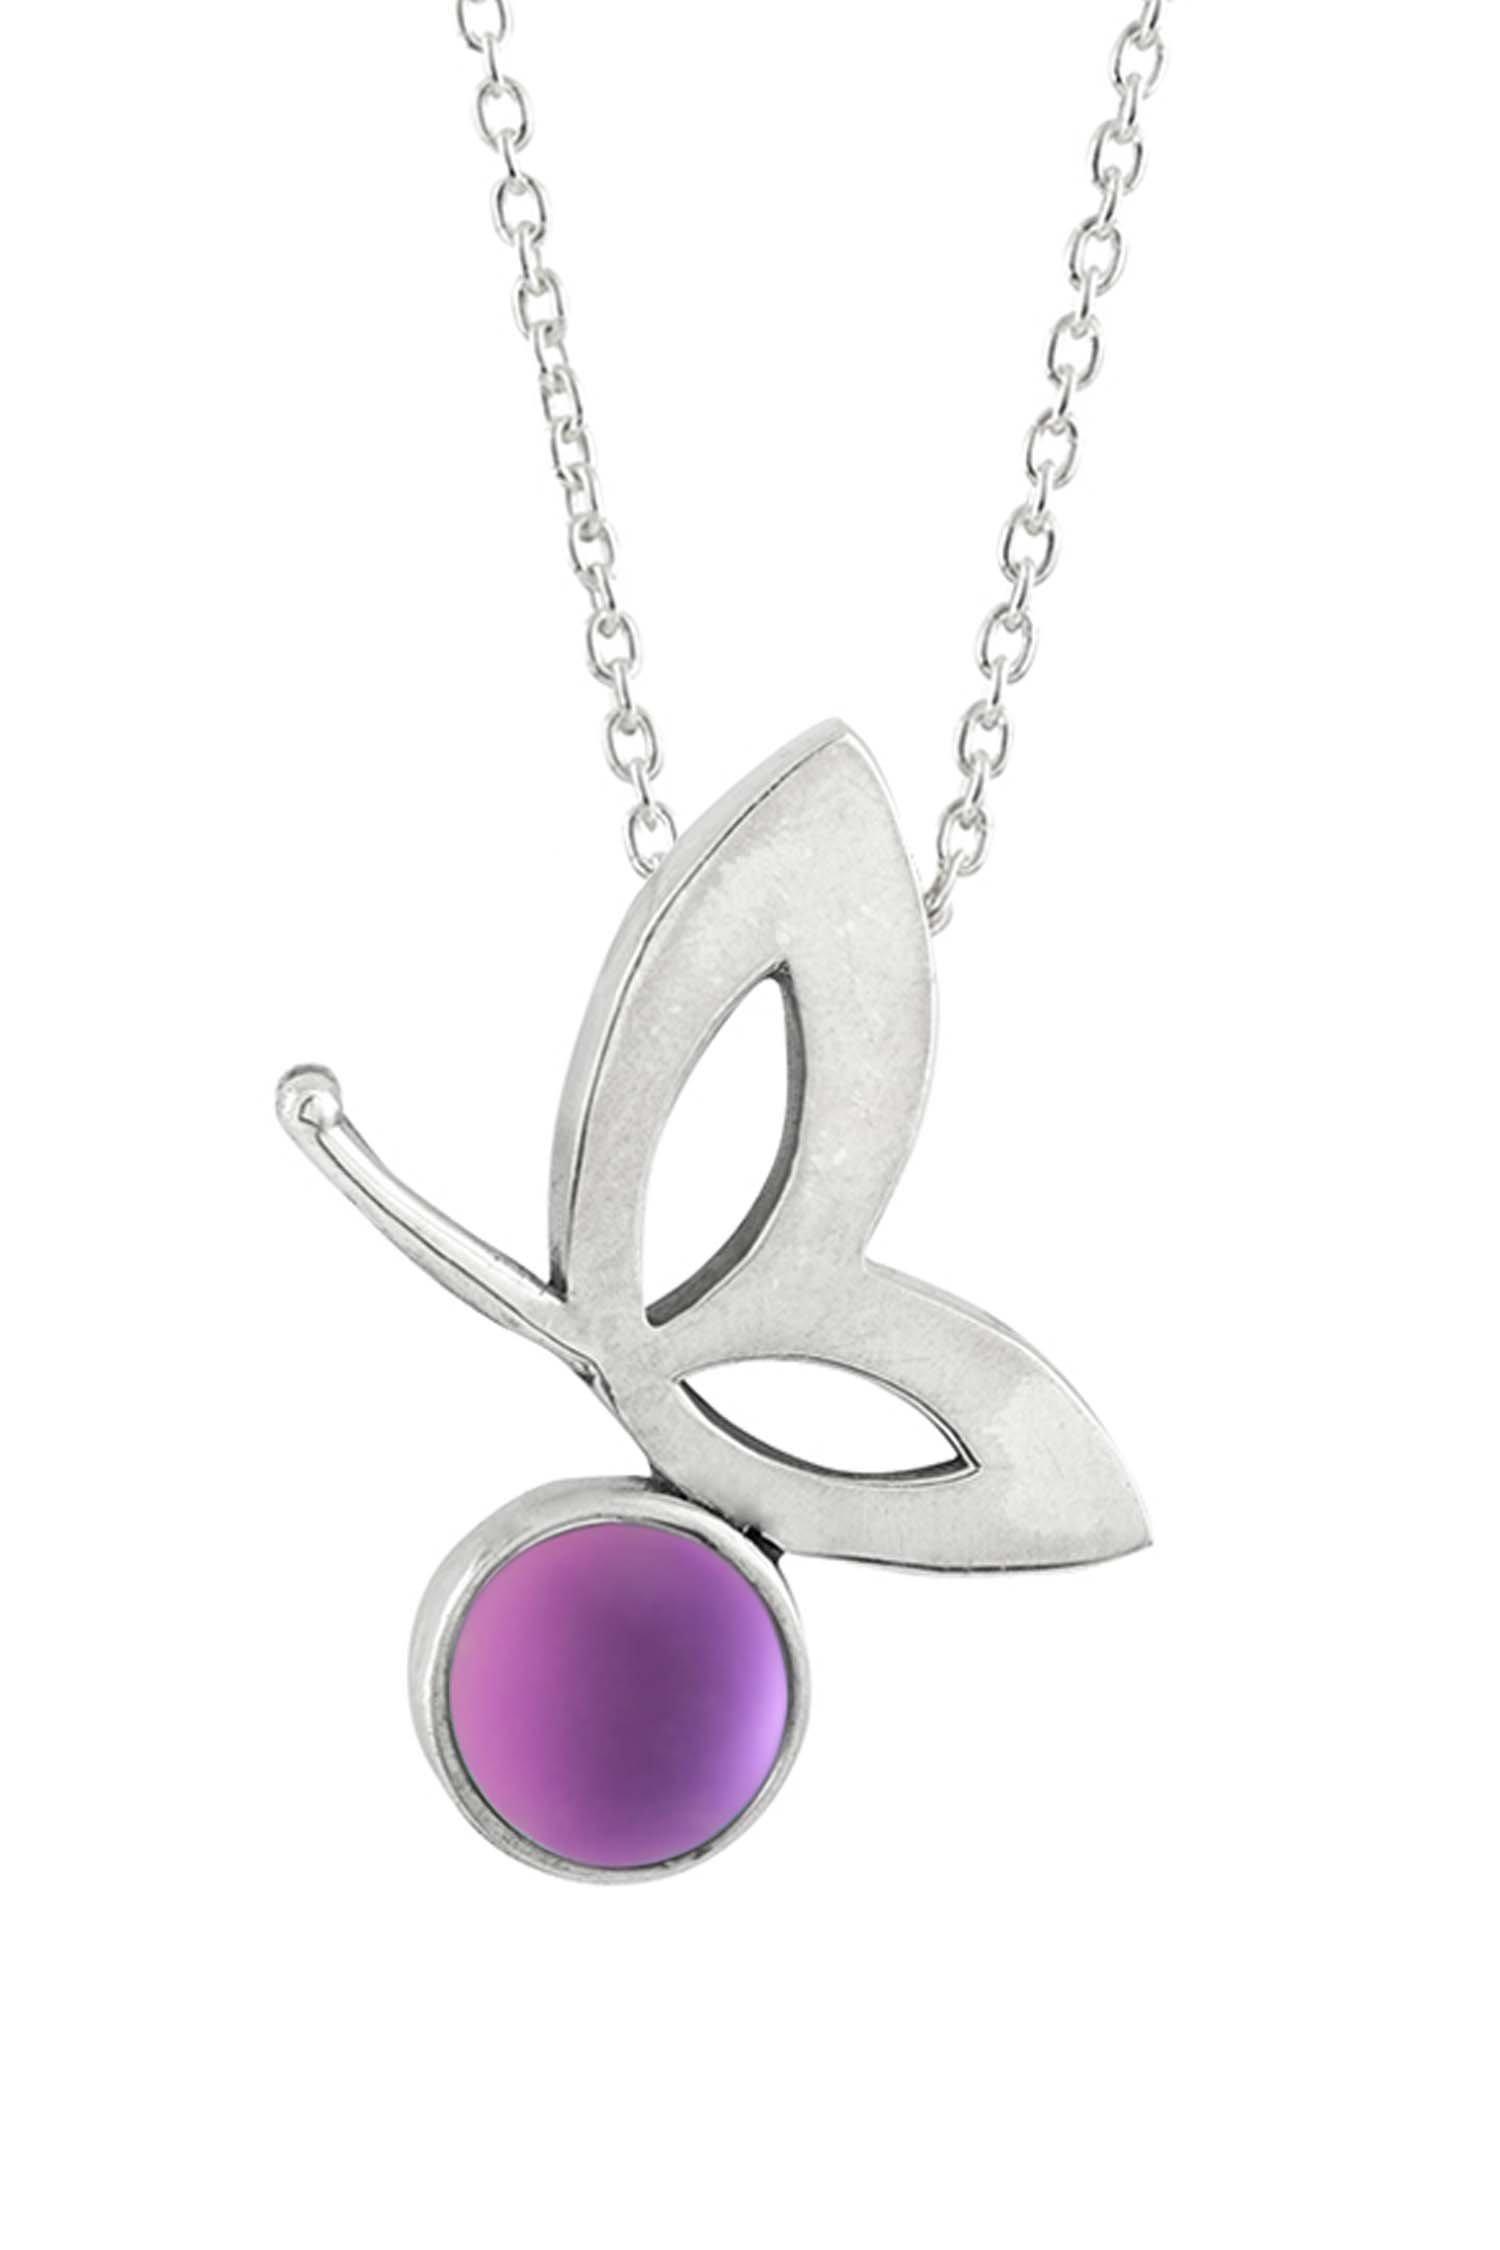 Luanne Crystal Butterfly Necklace - Anne Koplik Designs